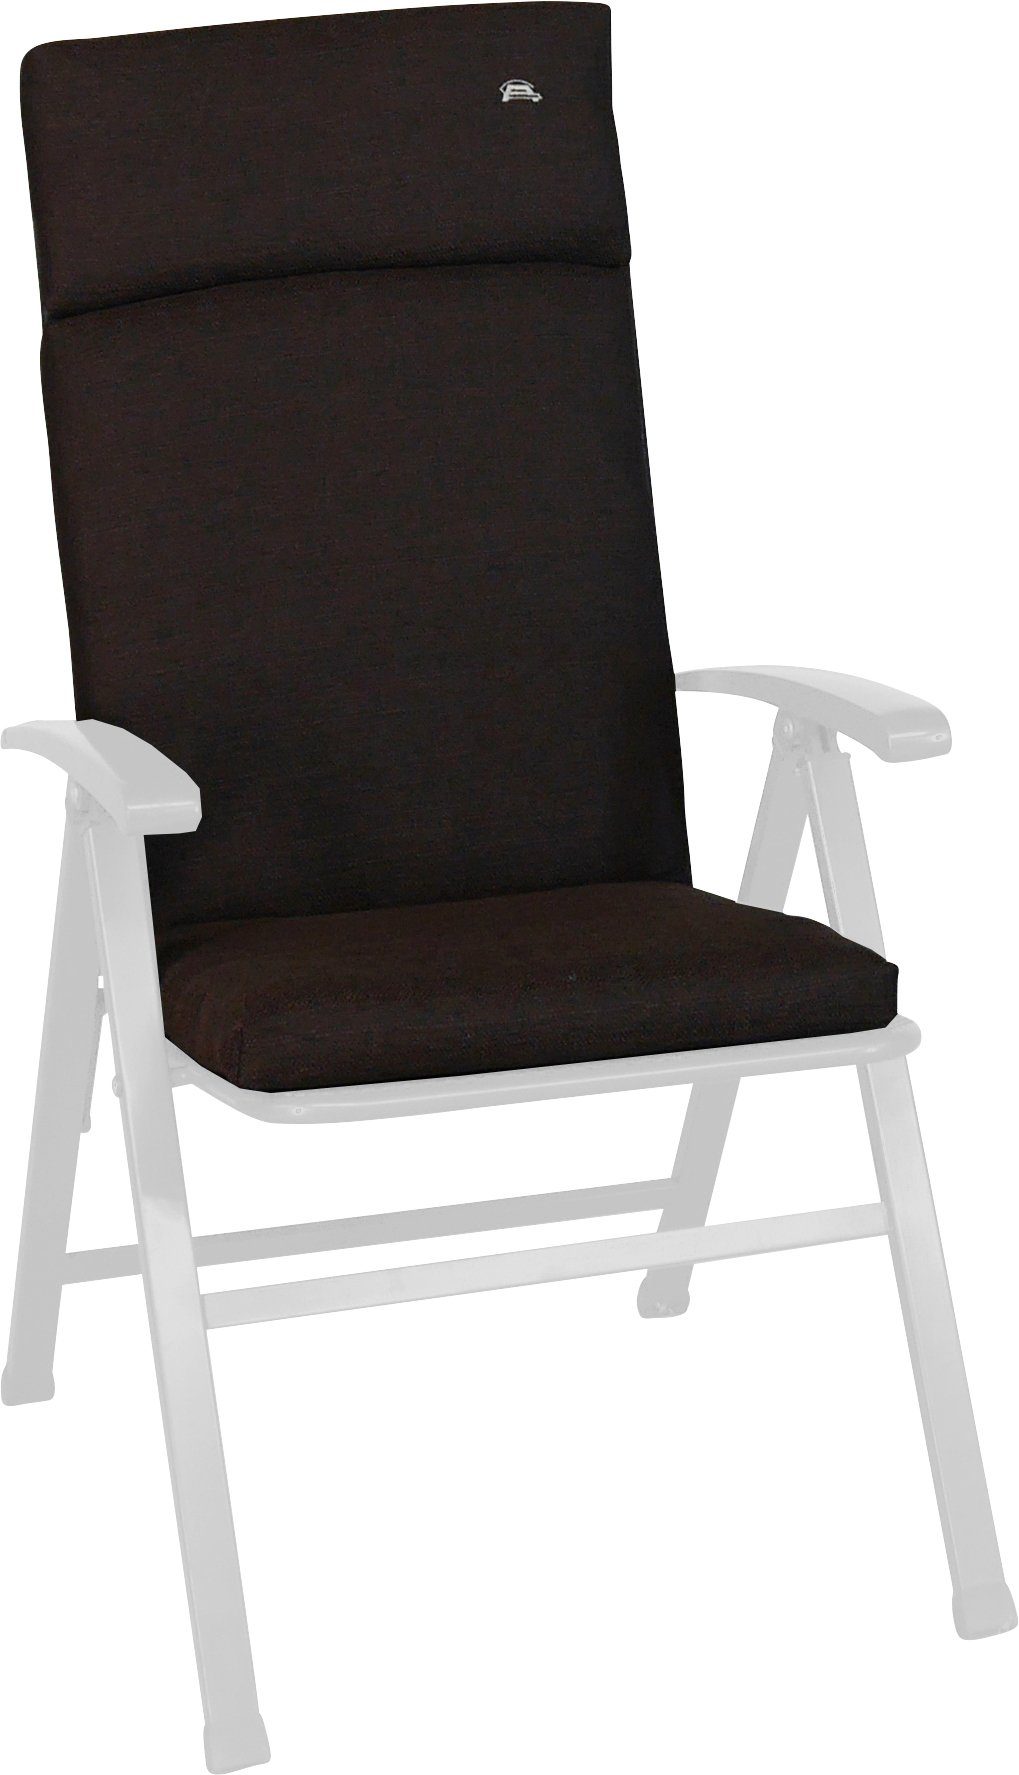 Angerer Freizeitmöbel Sesselauflage Smart, (B/T): cm ca. 47x112 braun